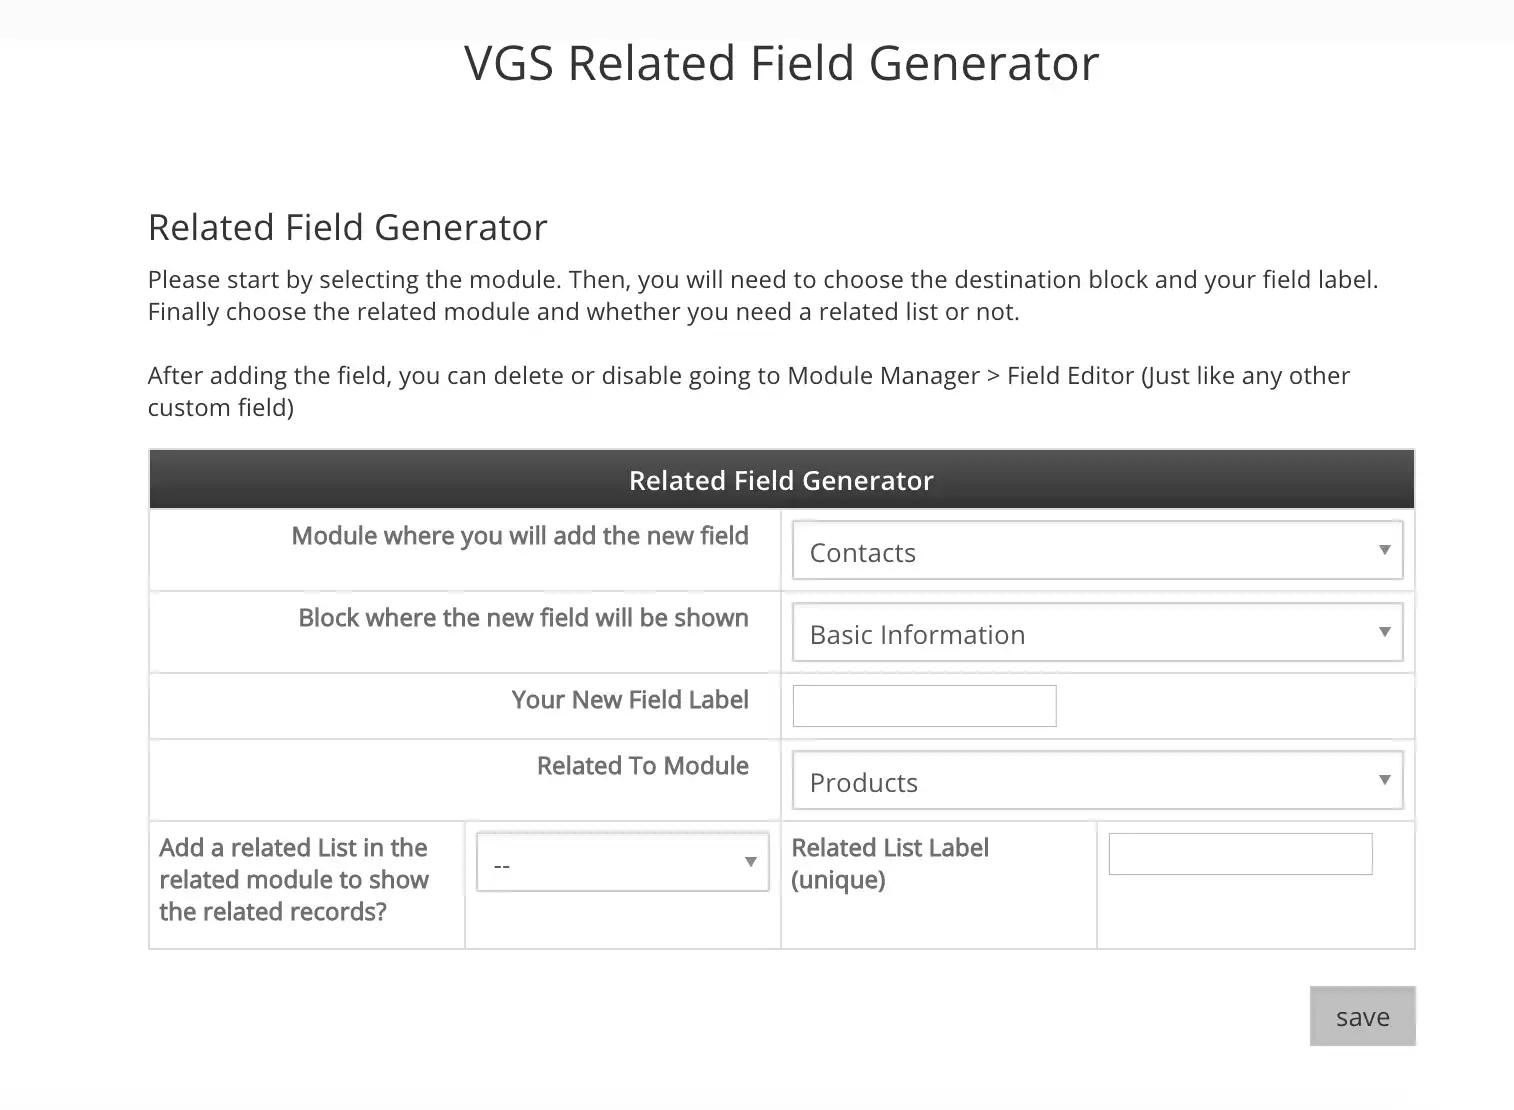 ابزار وب یا برنامه وب VGS Related Field Generator را دانلود کنید